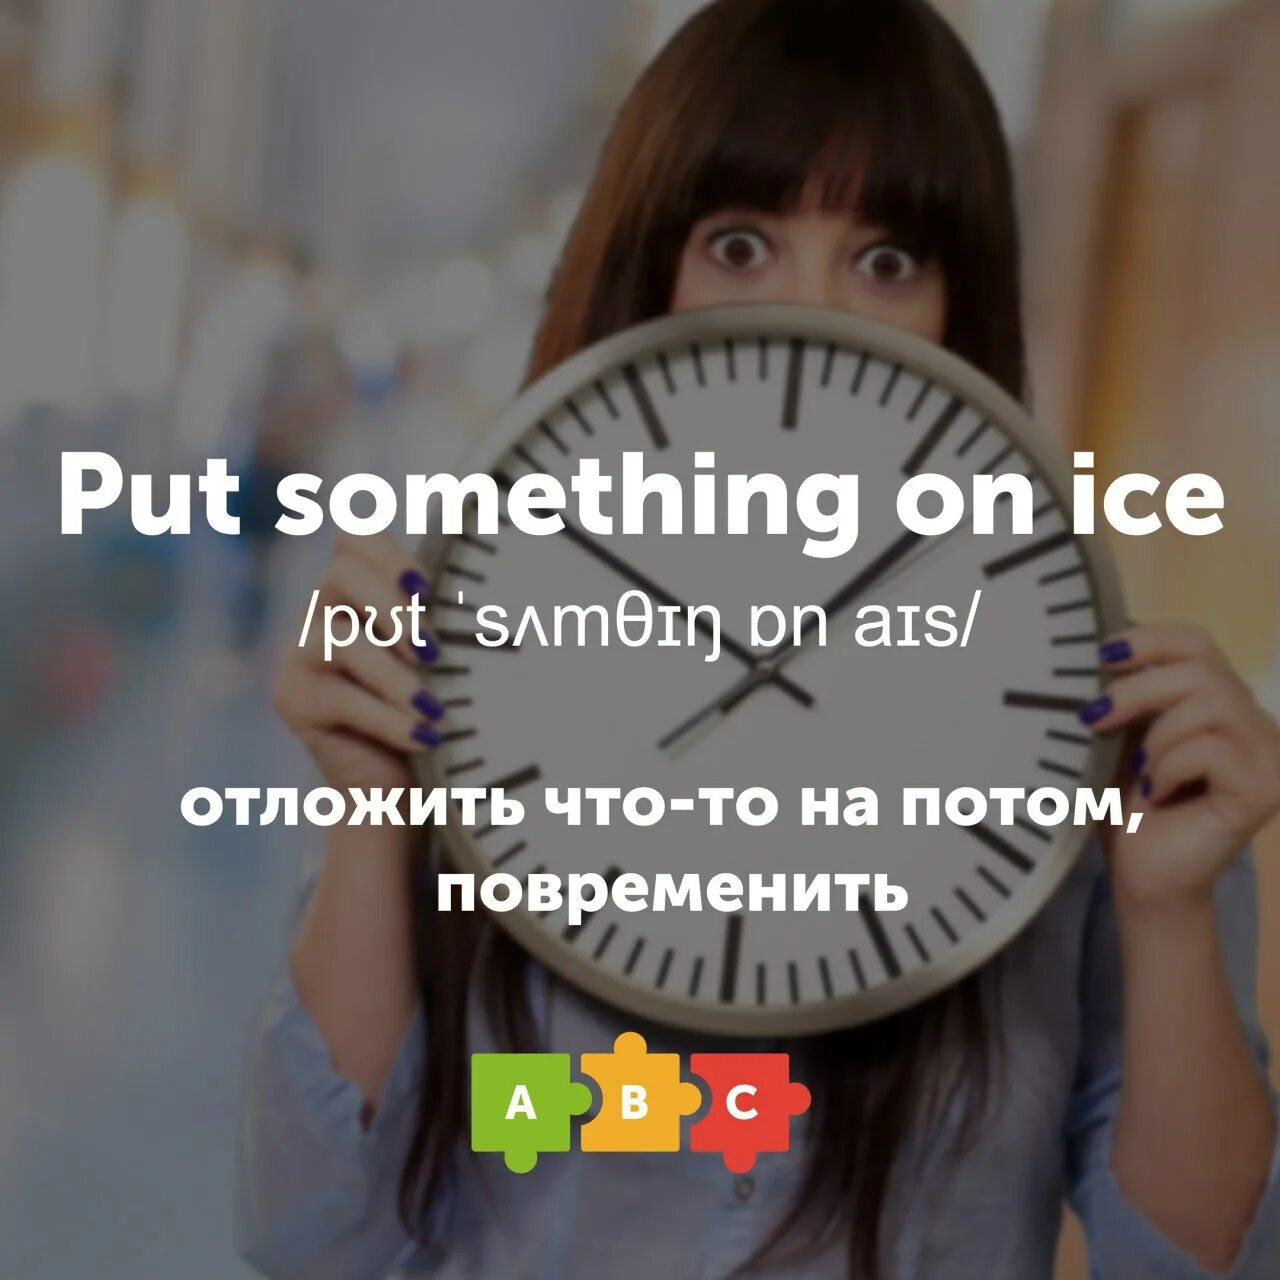 Put something on. Повременить. Put something on Ice фото. Put something on Ice перевод.